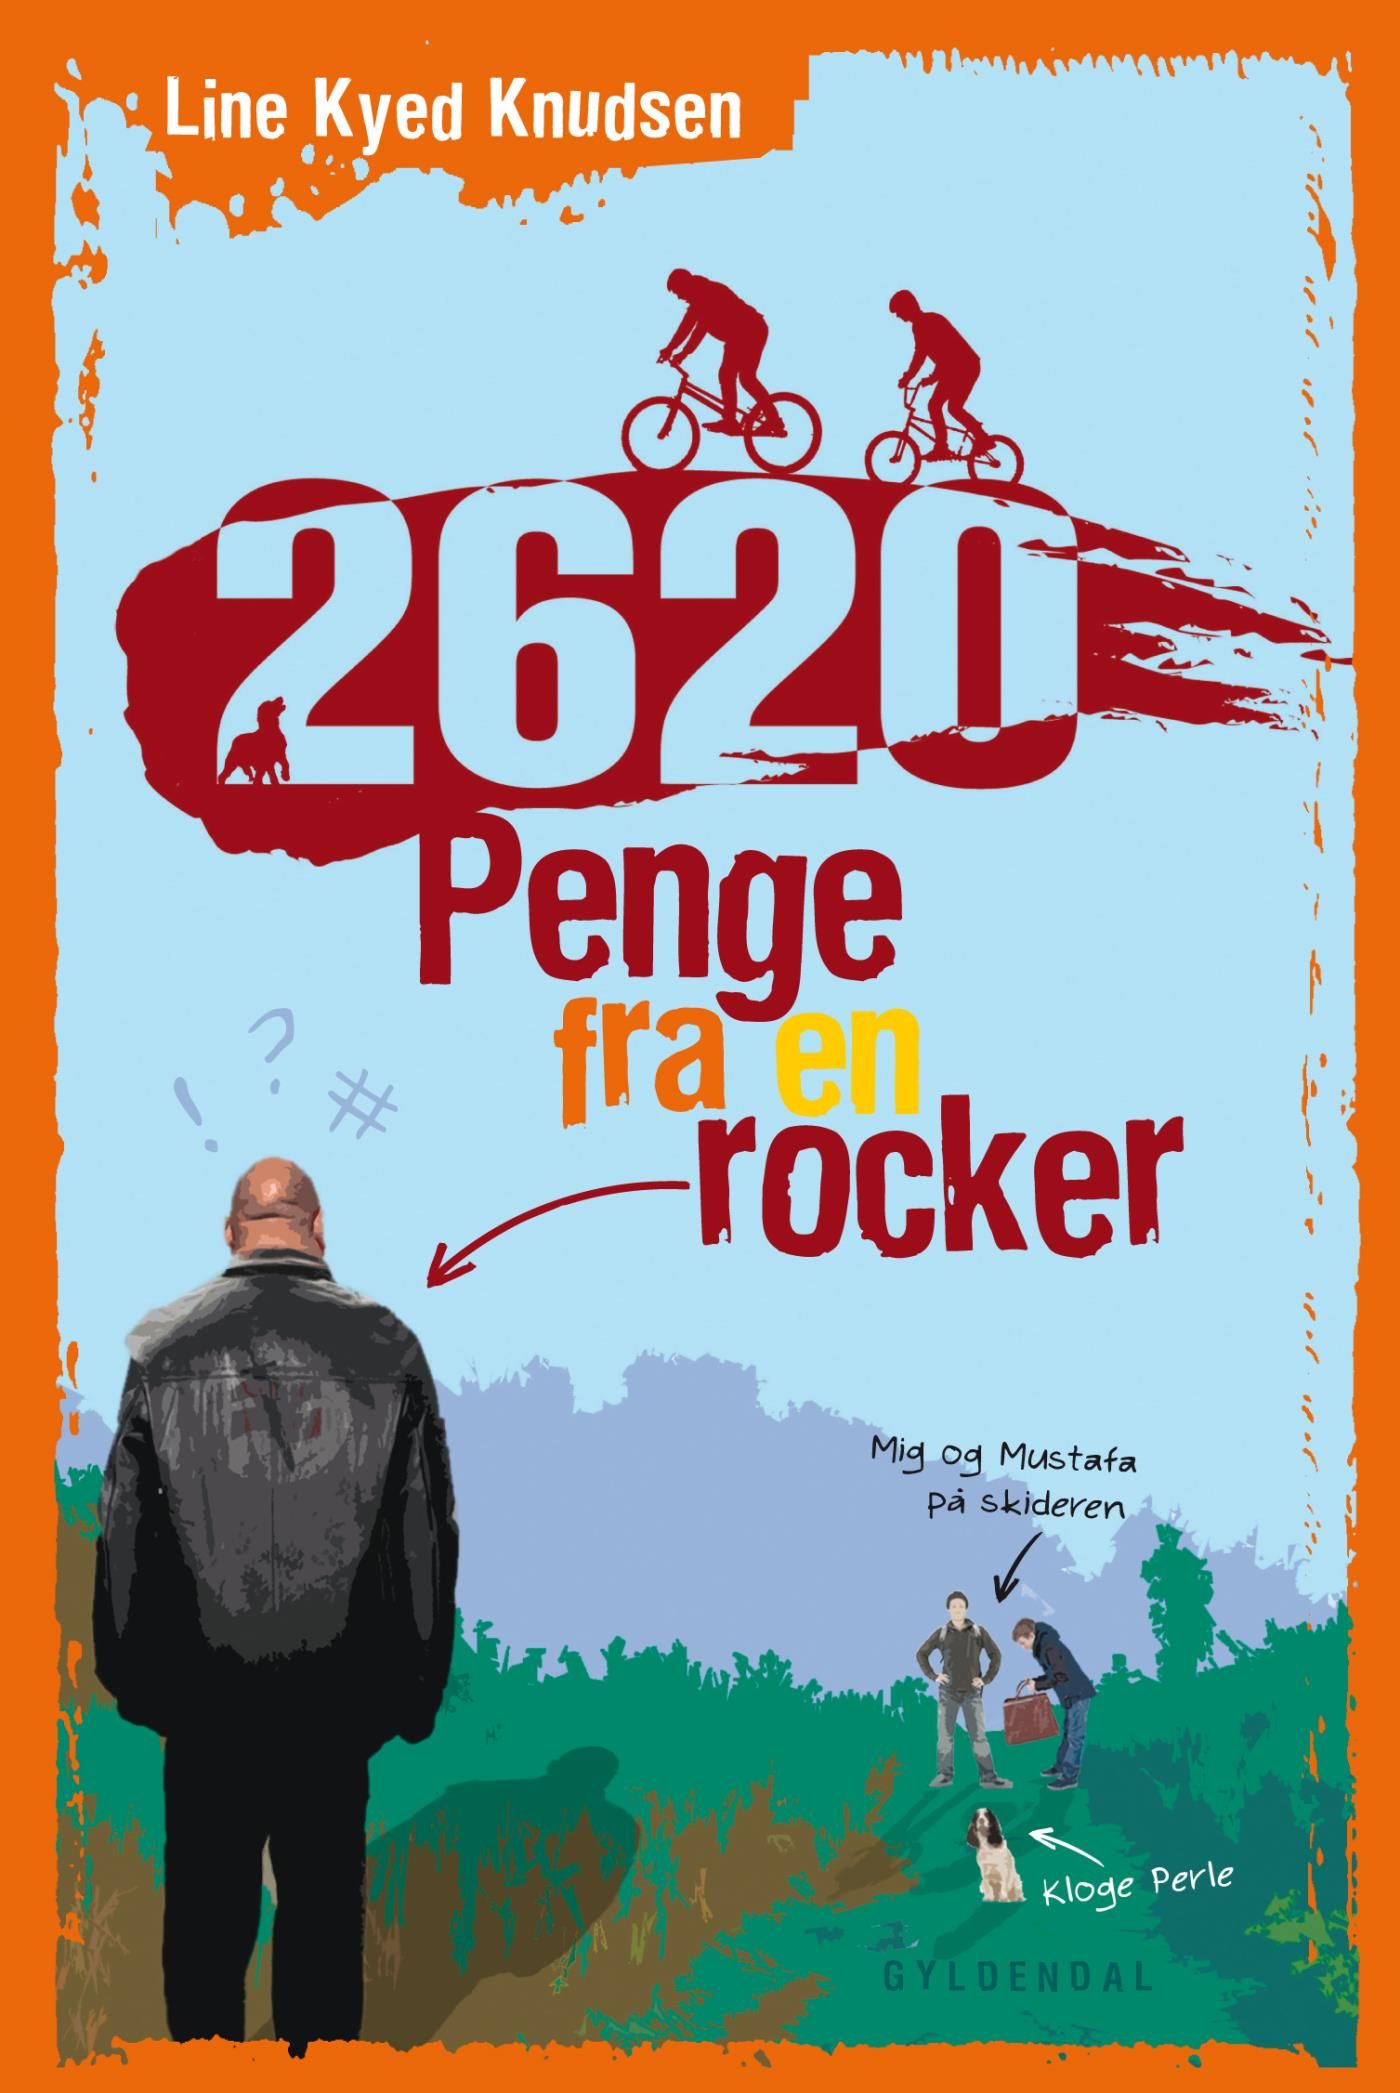 2620 1 - Penge fra en rocker, eBook by Line Kyed Knudsen